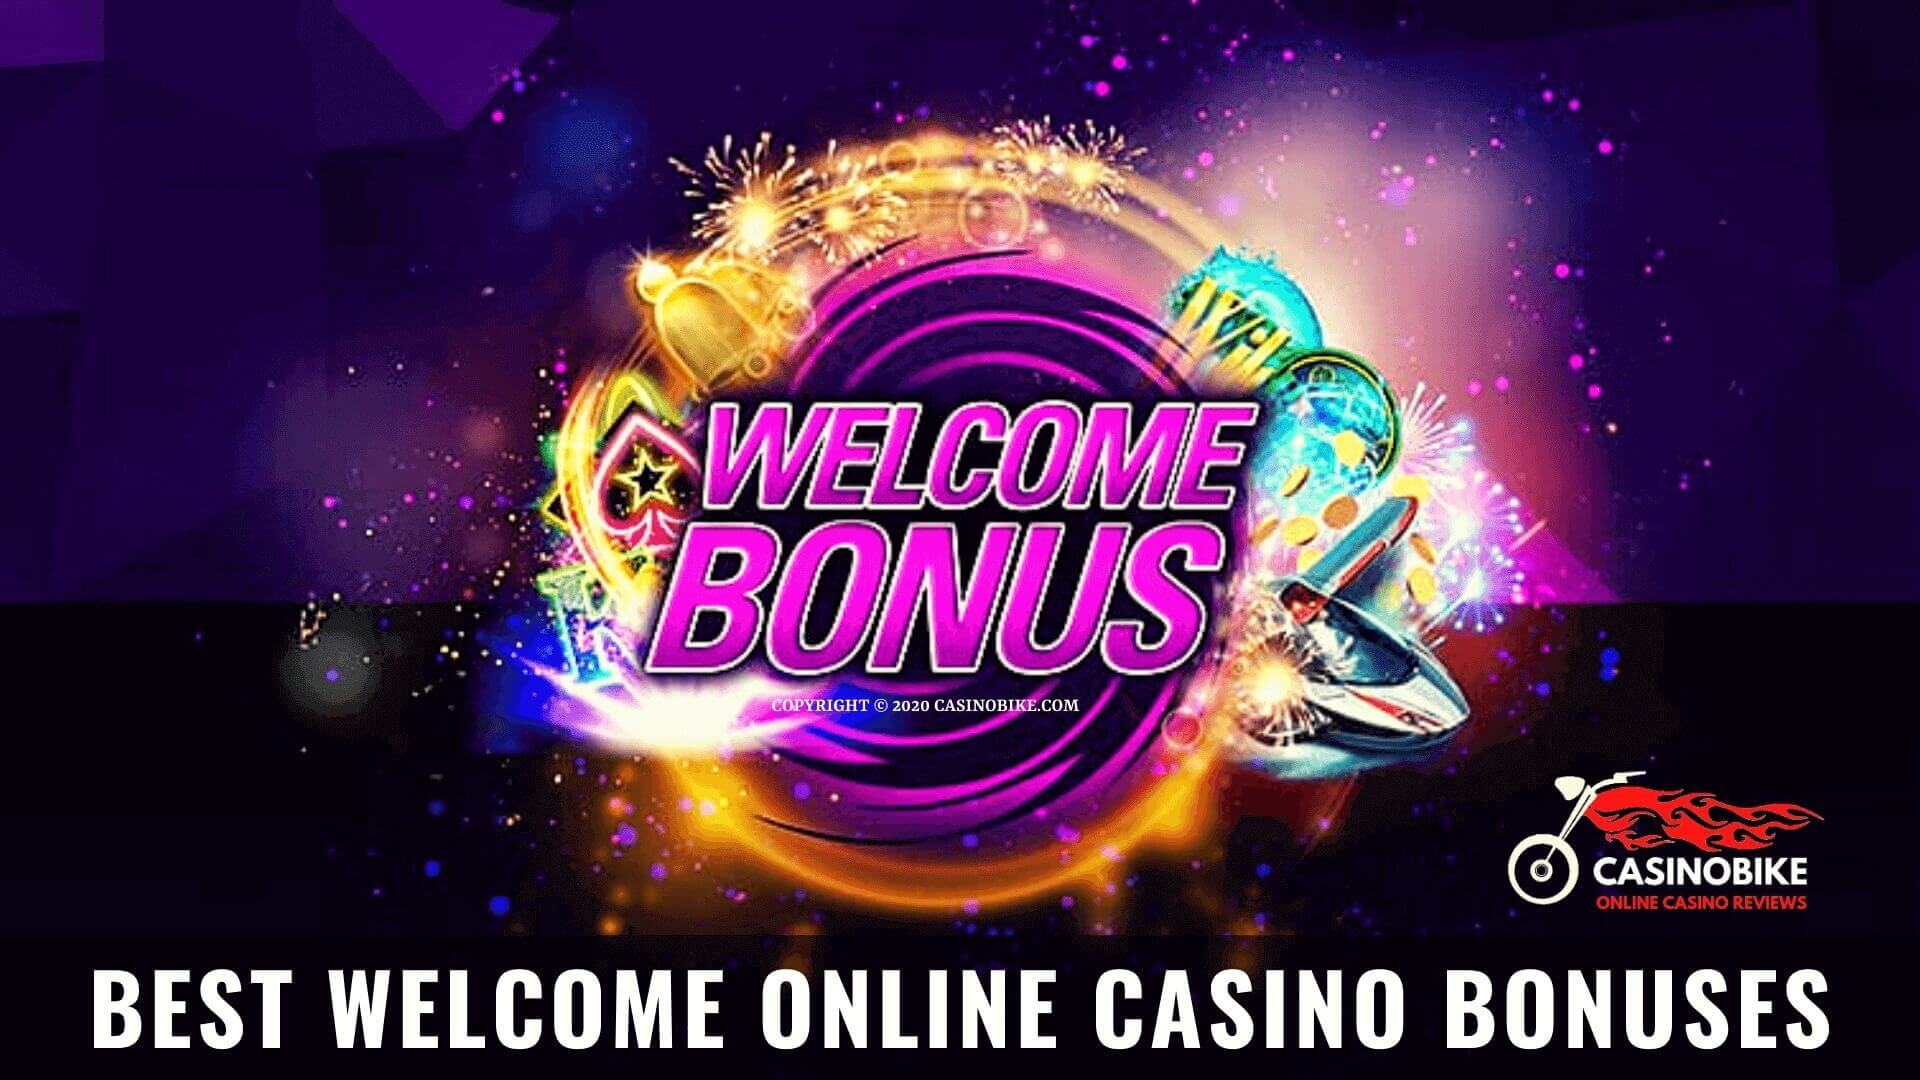 Best Welcome Online Casino Bonuses